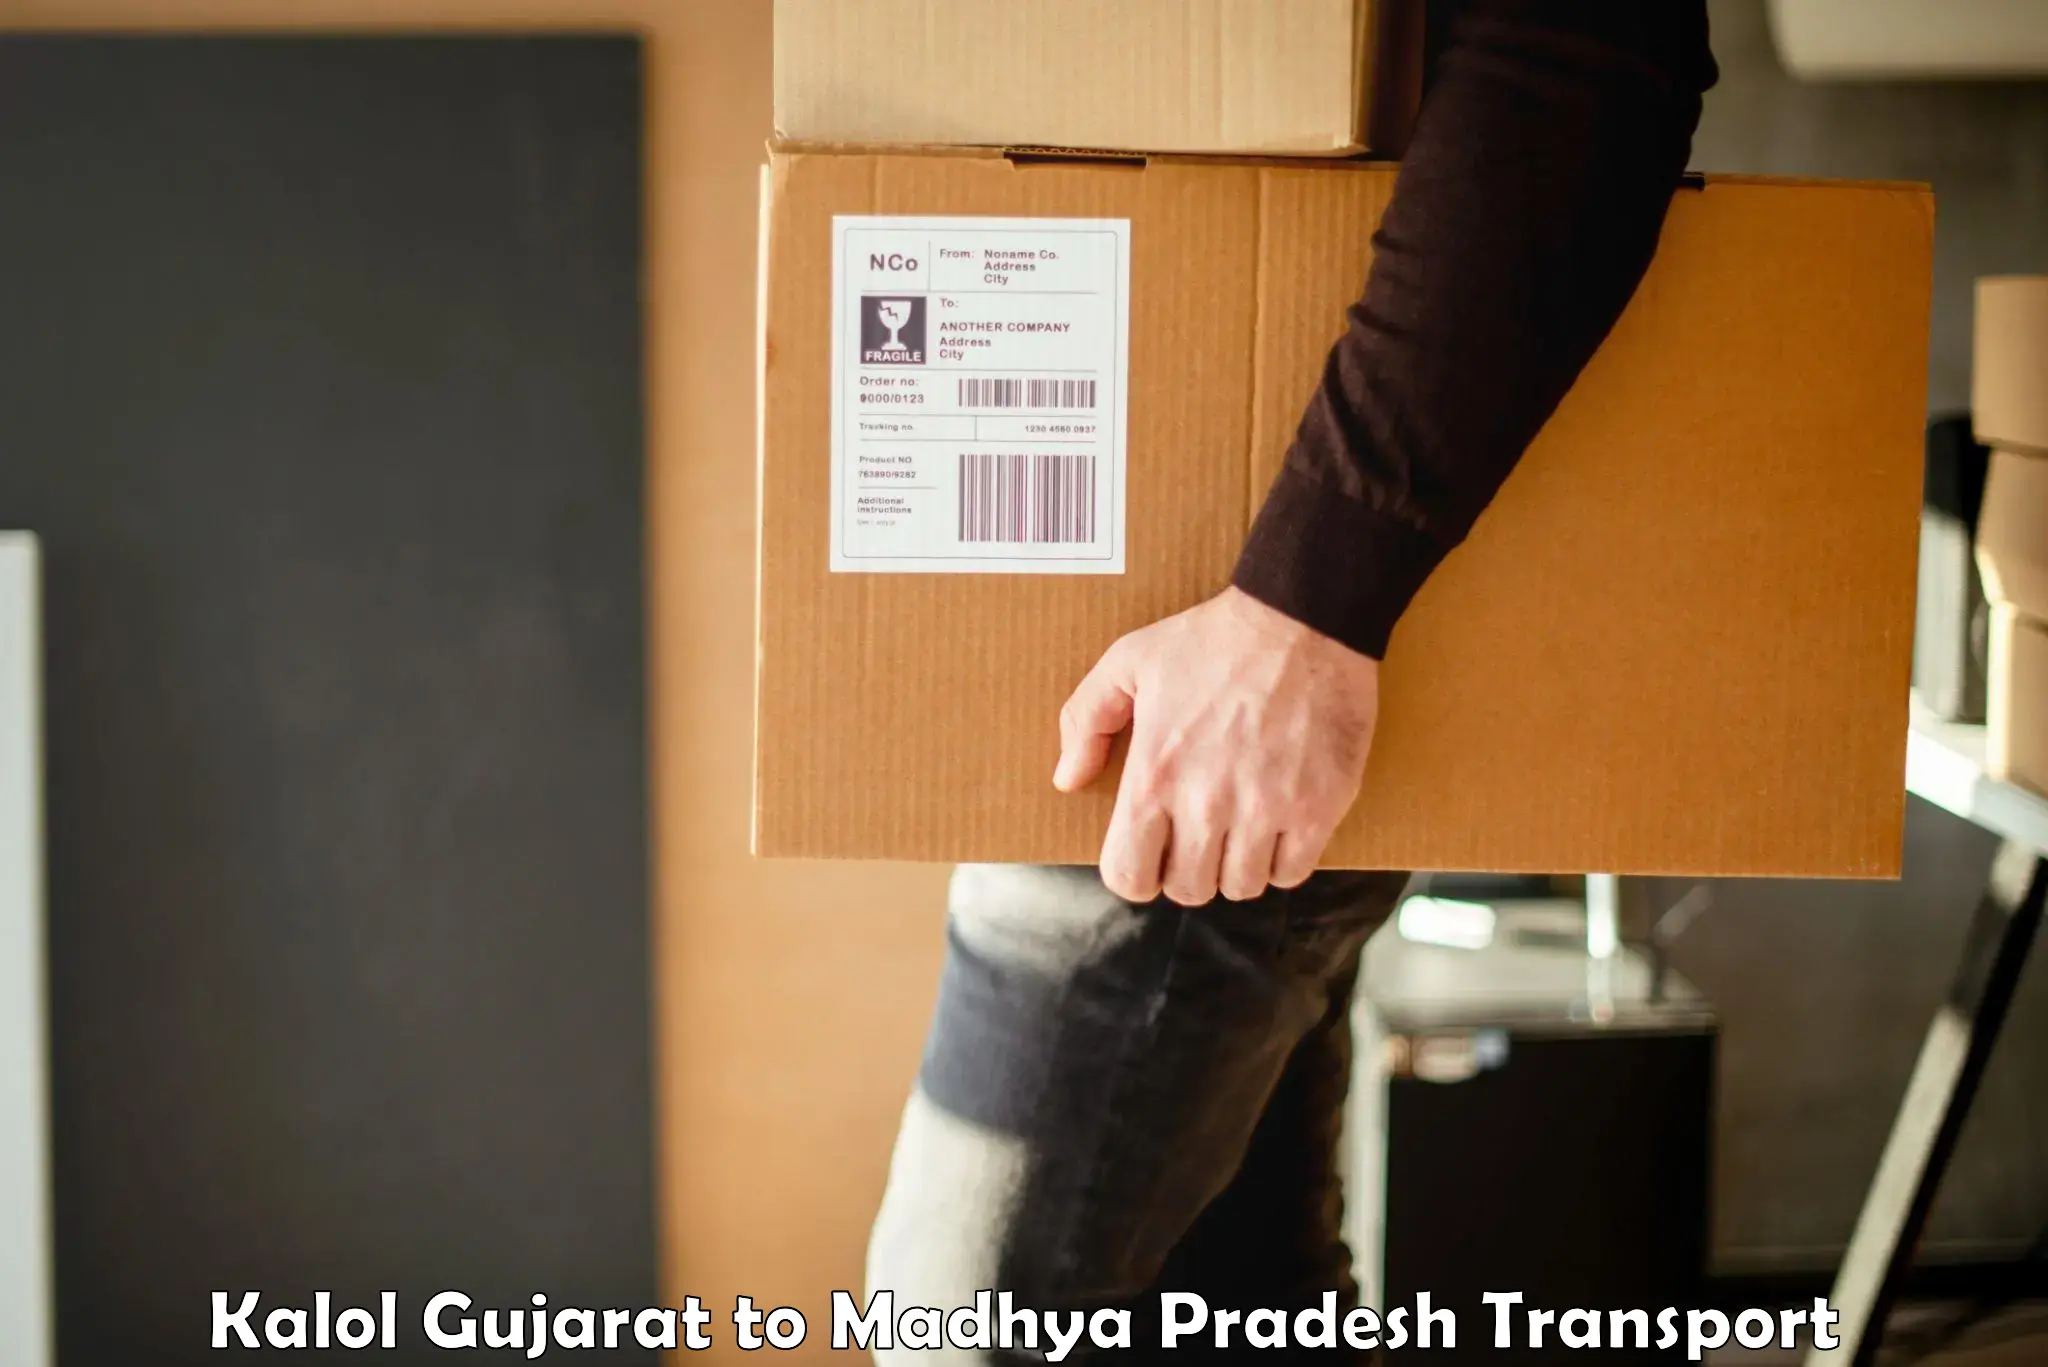 Furniture transport service Kalol Gujarat to Pithampur